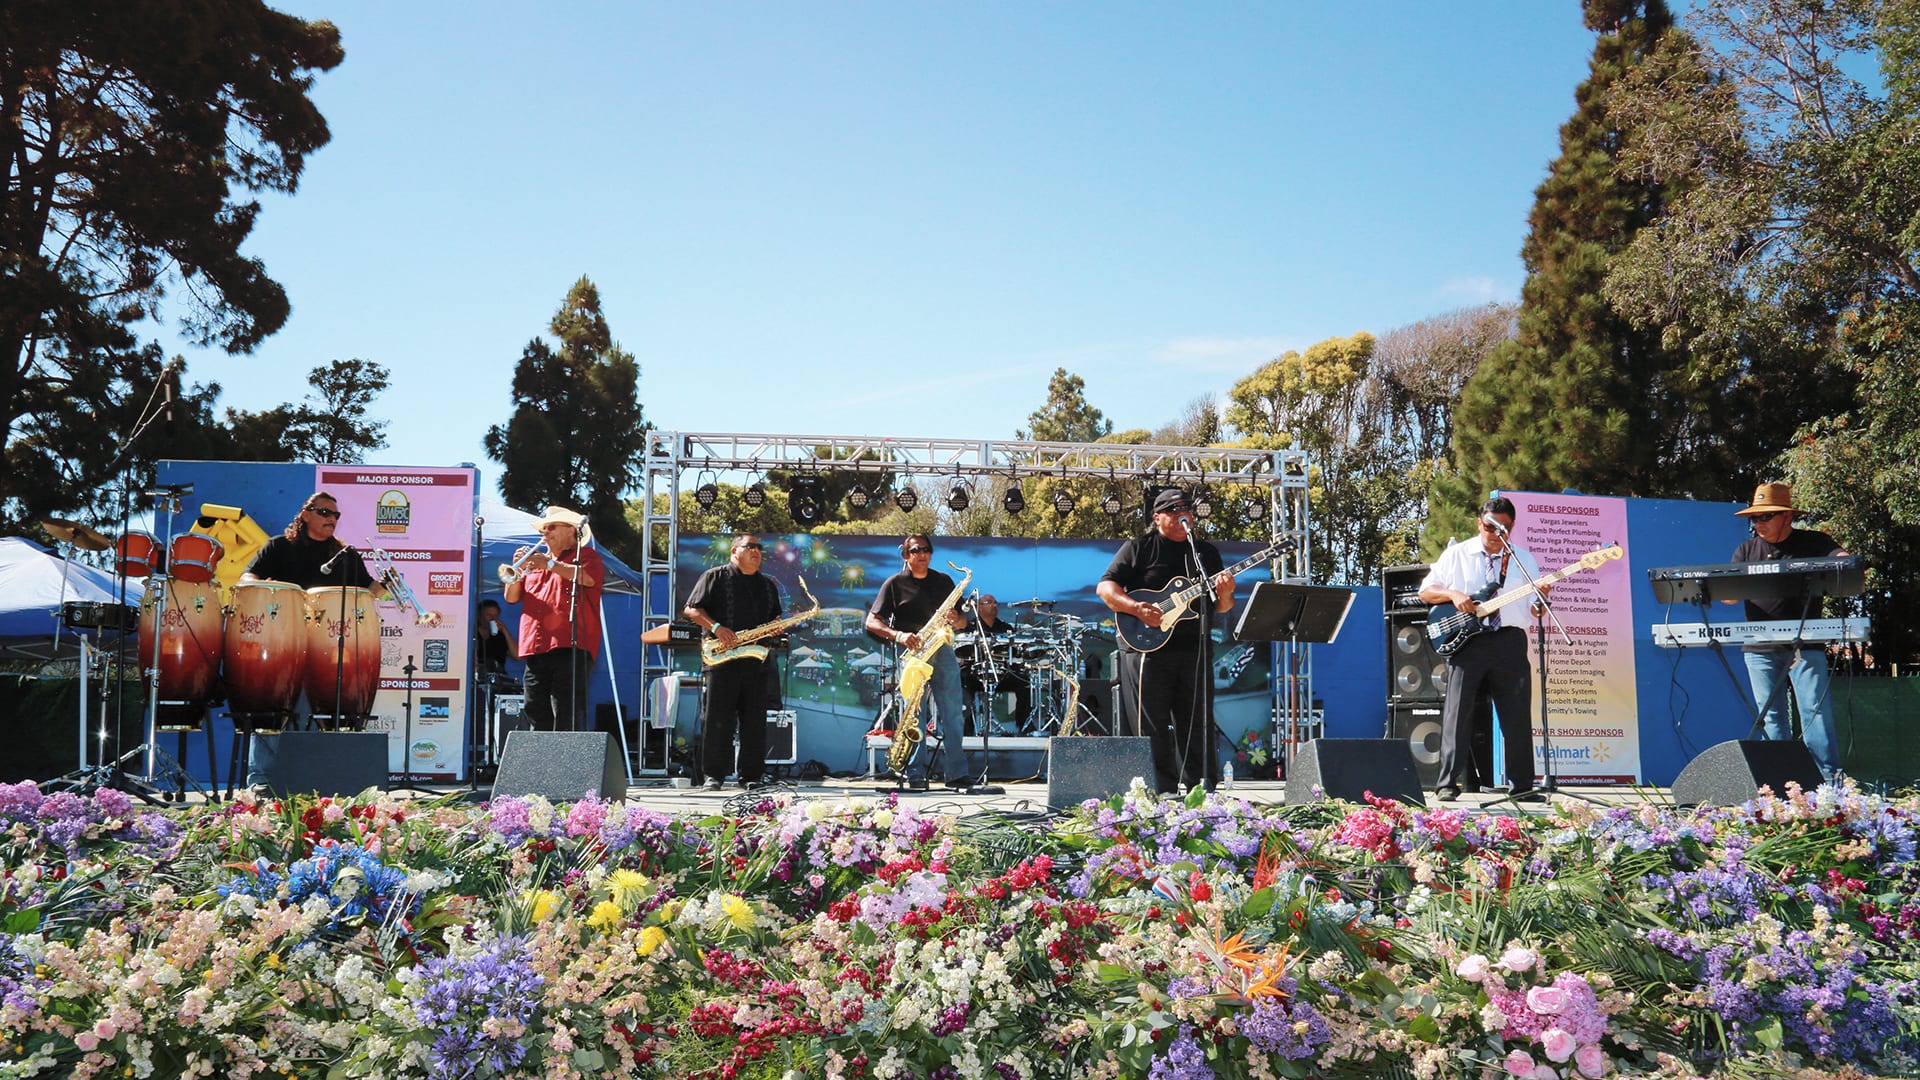 Lompoc flower festival band